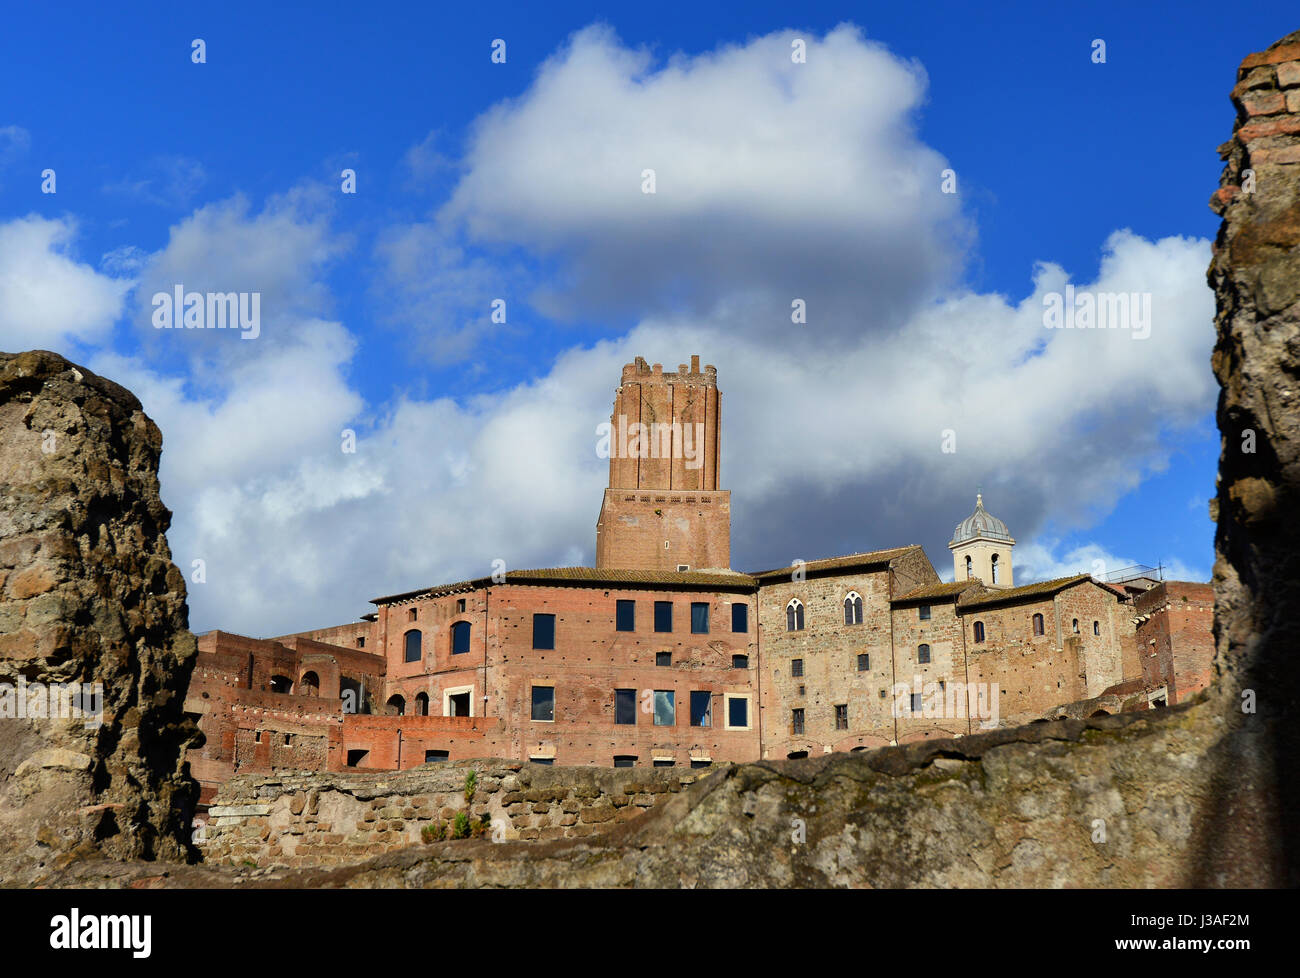 Alten Turm der Miliz überbaut Trajans Markt im Mittelalter, von Ruinen der Kaiserforen in Rom gesehen Stockfoto